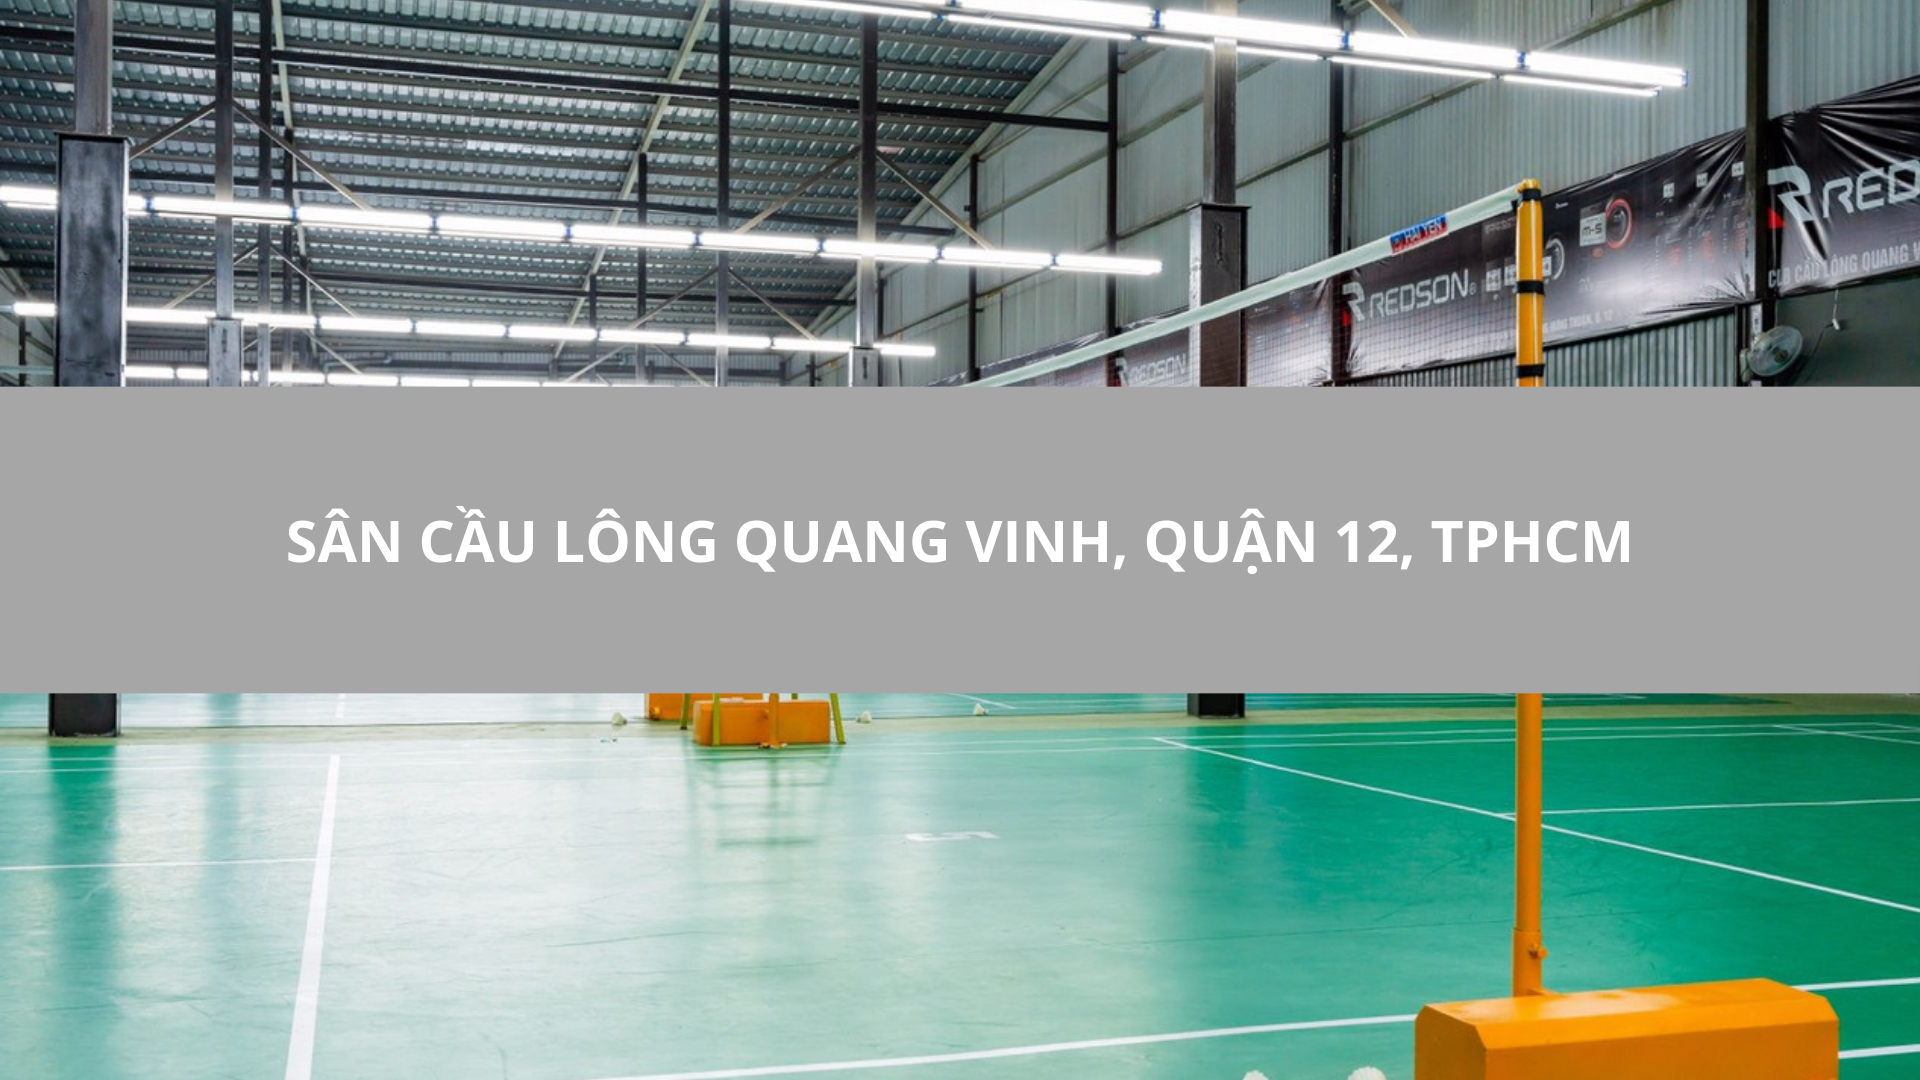 Sân cầu lông Quang Vinh, Quận 12, TPHCM